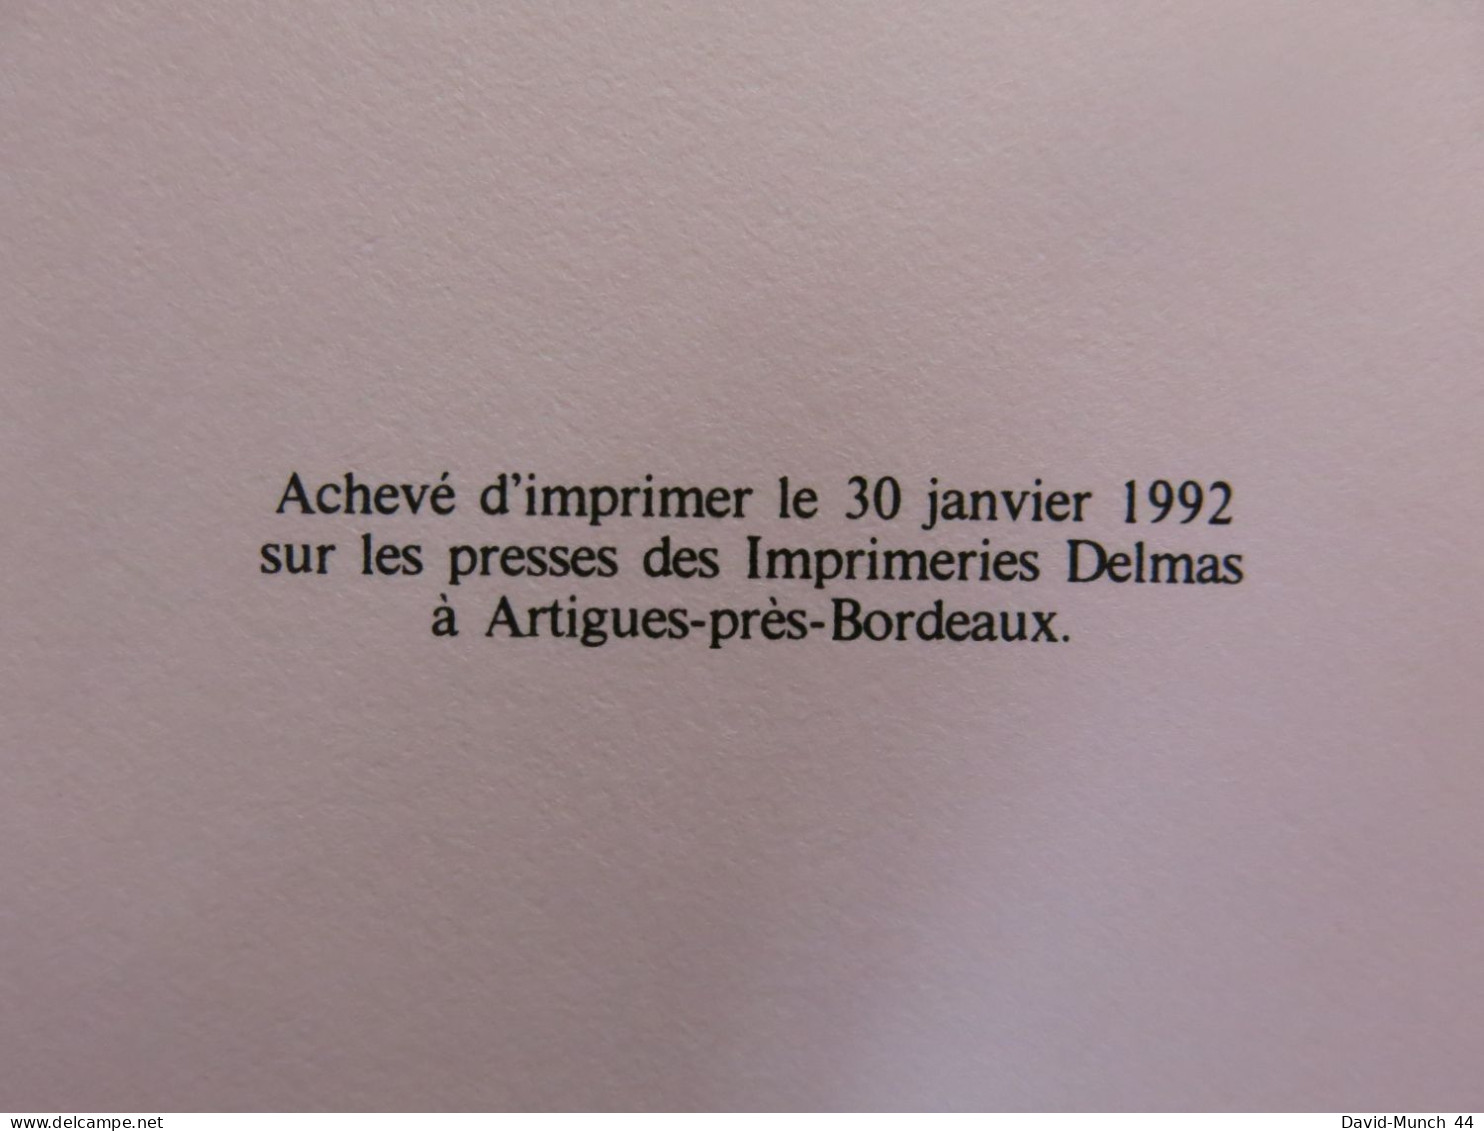 Abc de la Symbolique du Tarot de Colette Silvestre-Haeberle. Jacques Grancher éditeur. 1992